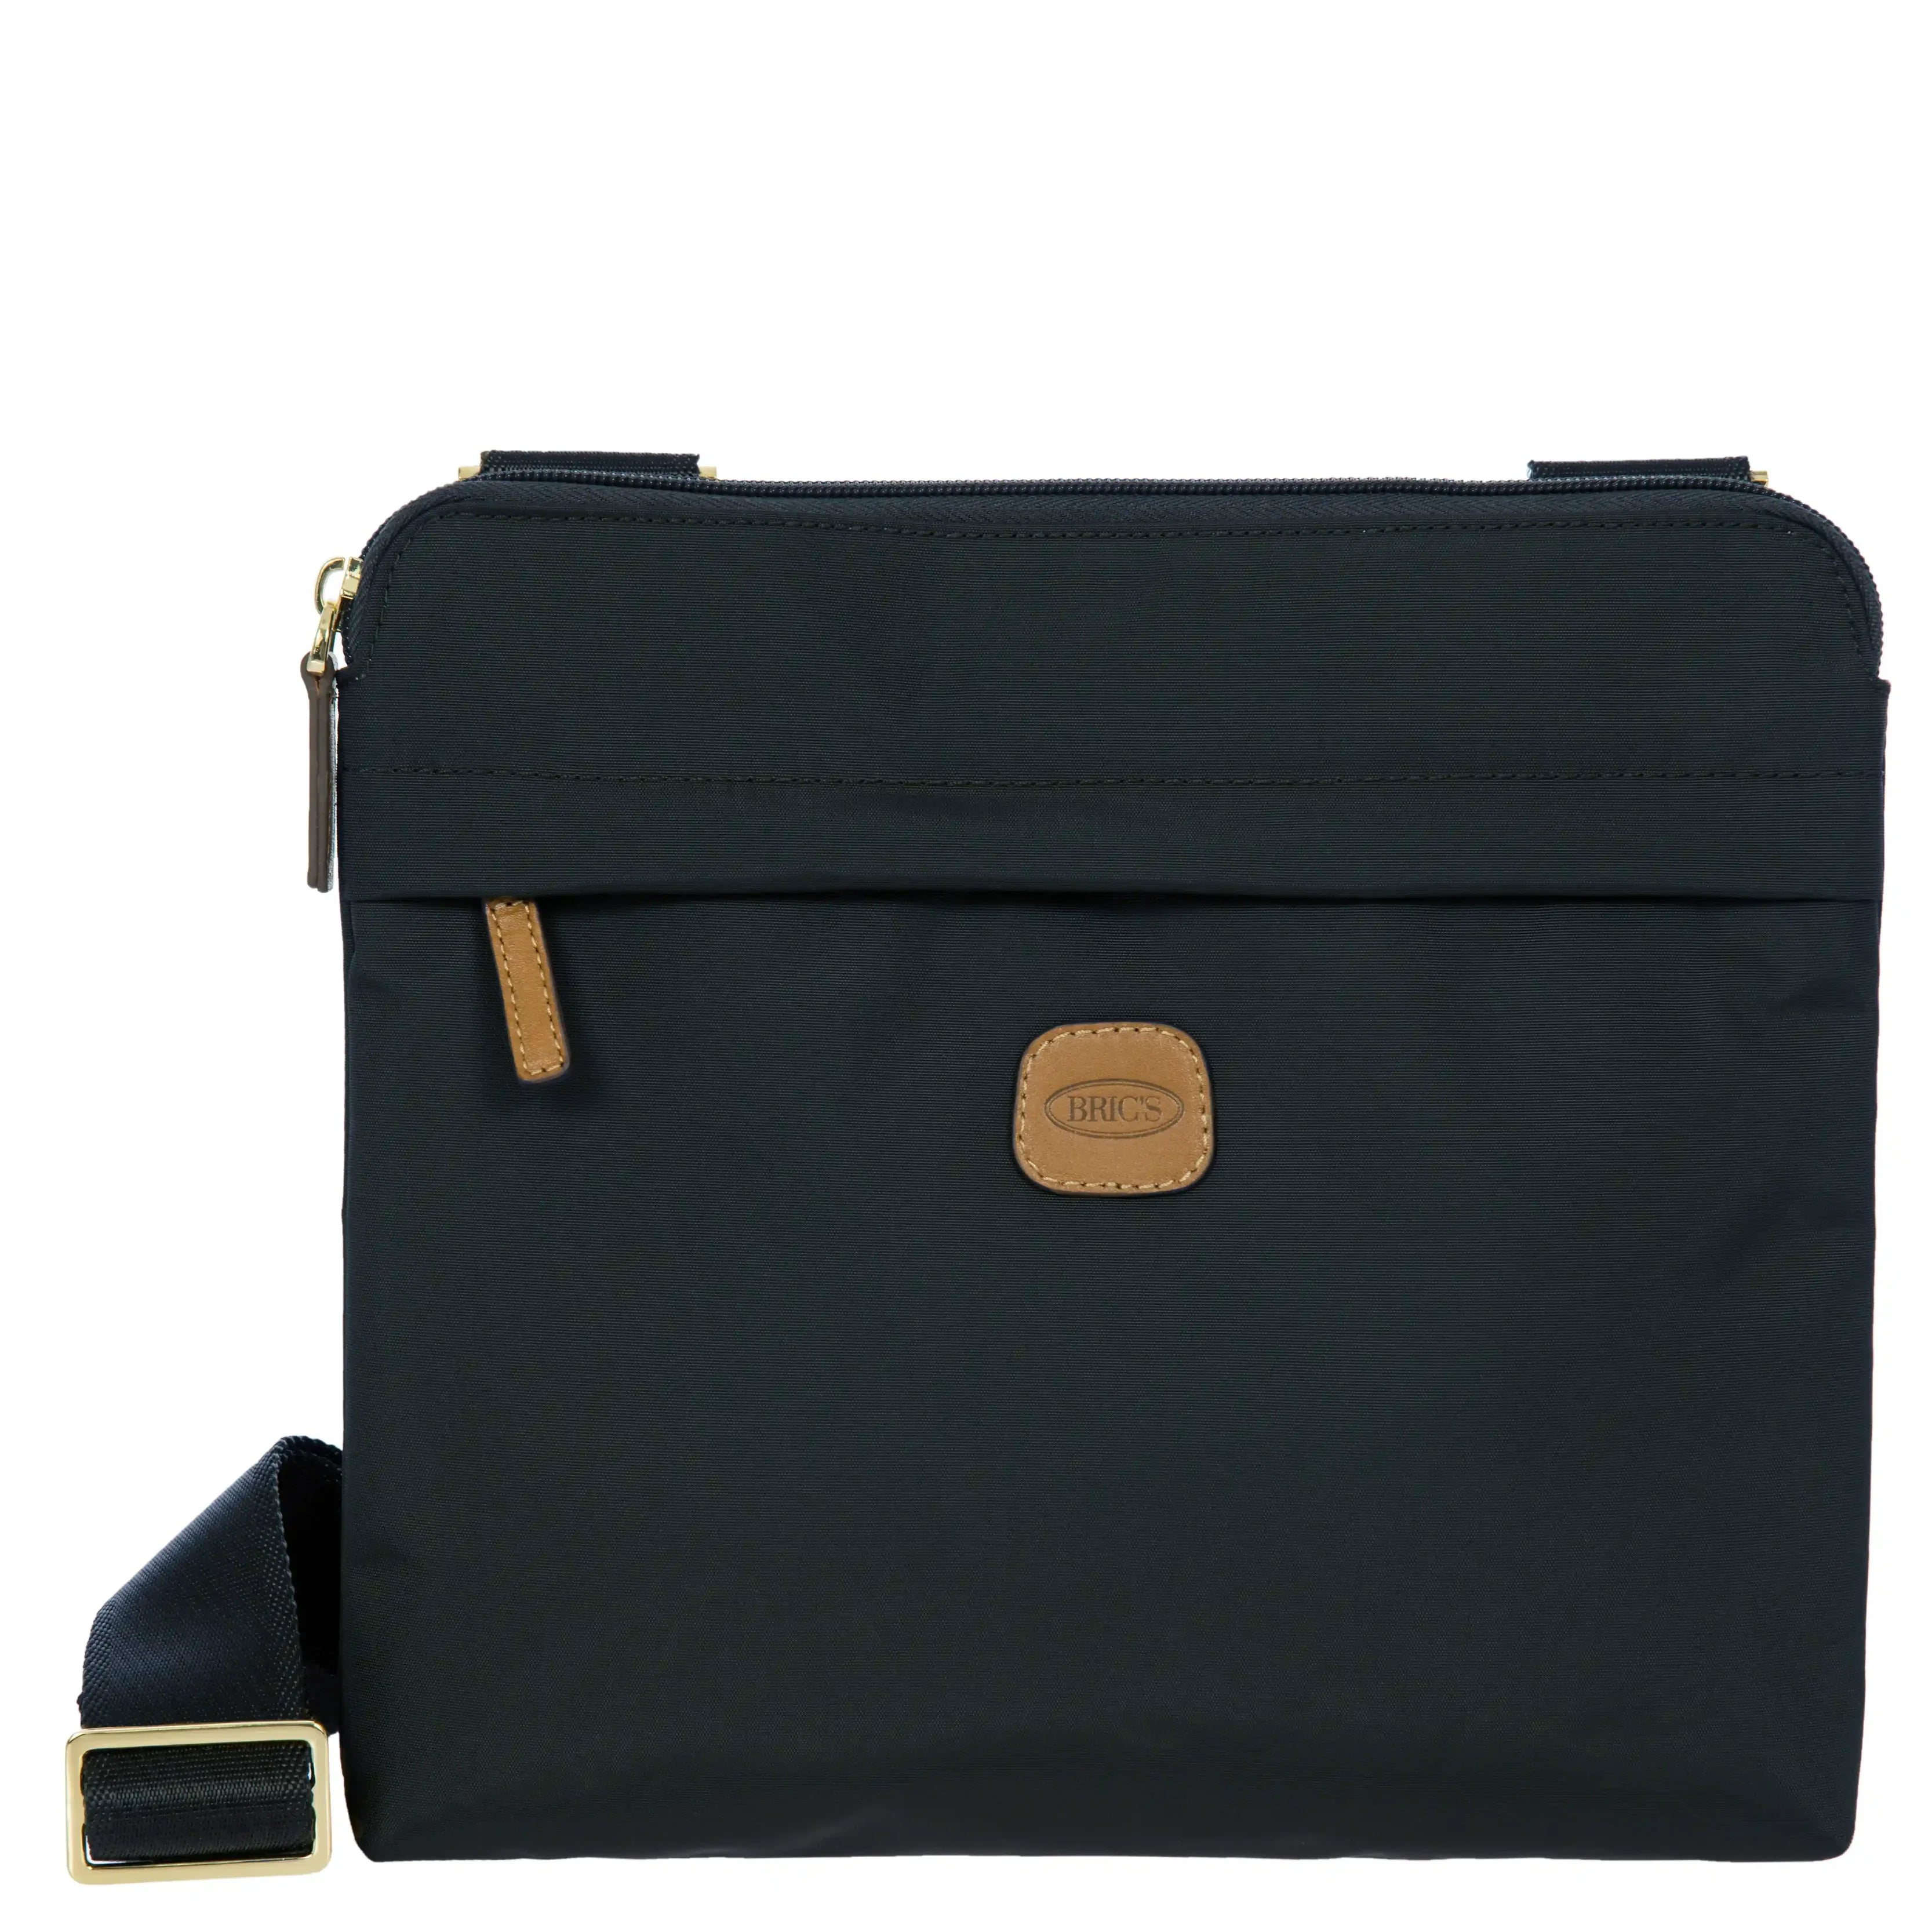 Brics X-Bag Shoulderbag 26 cm - Black